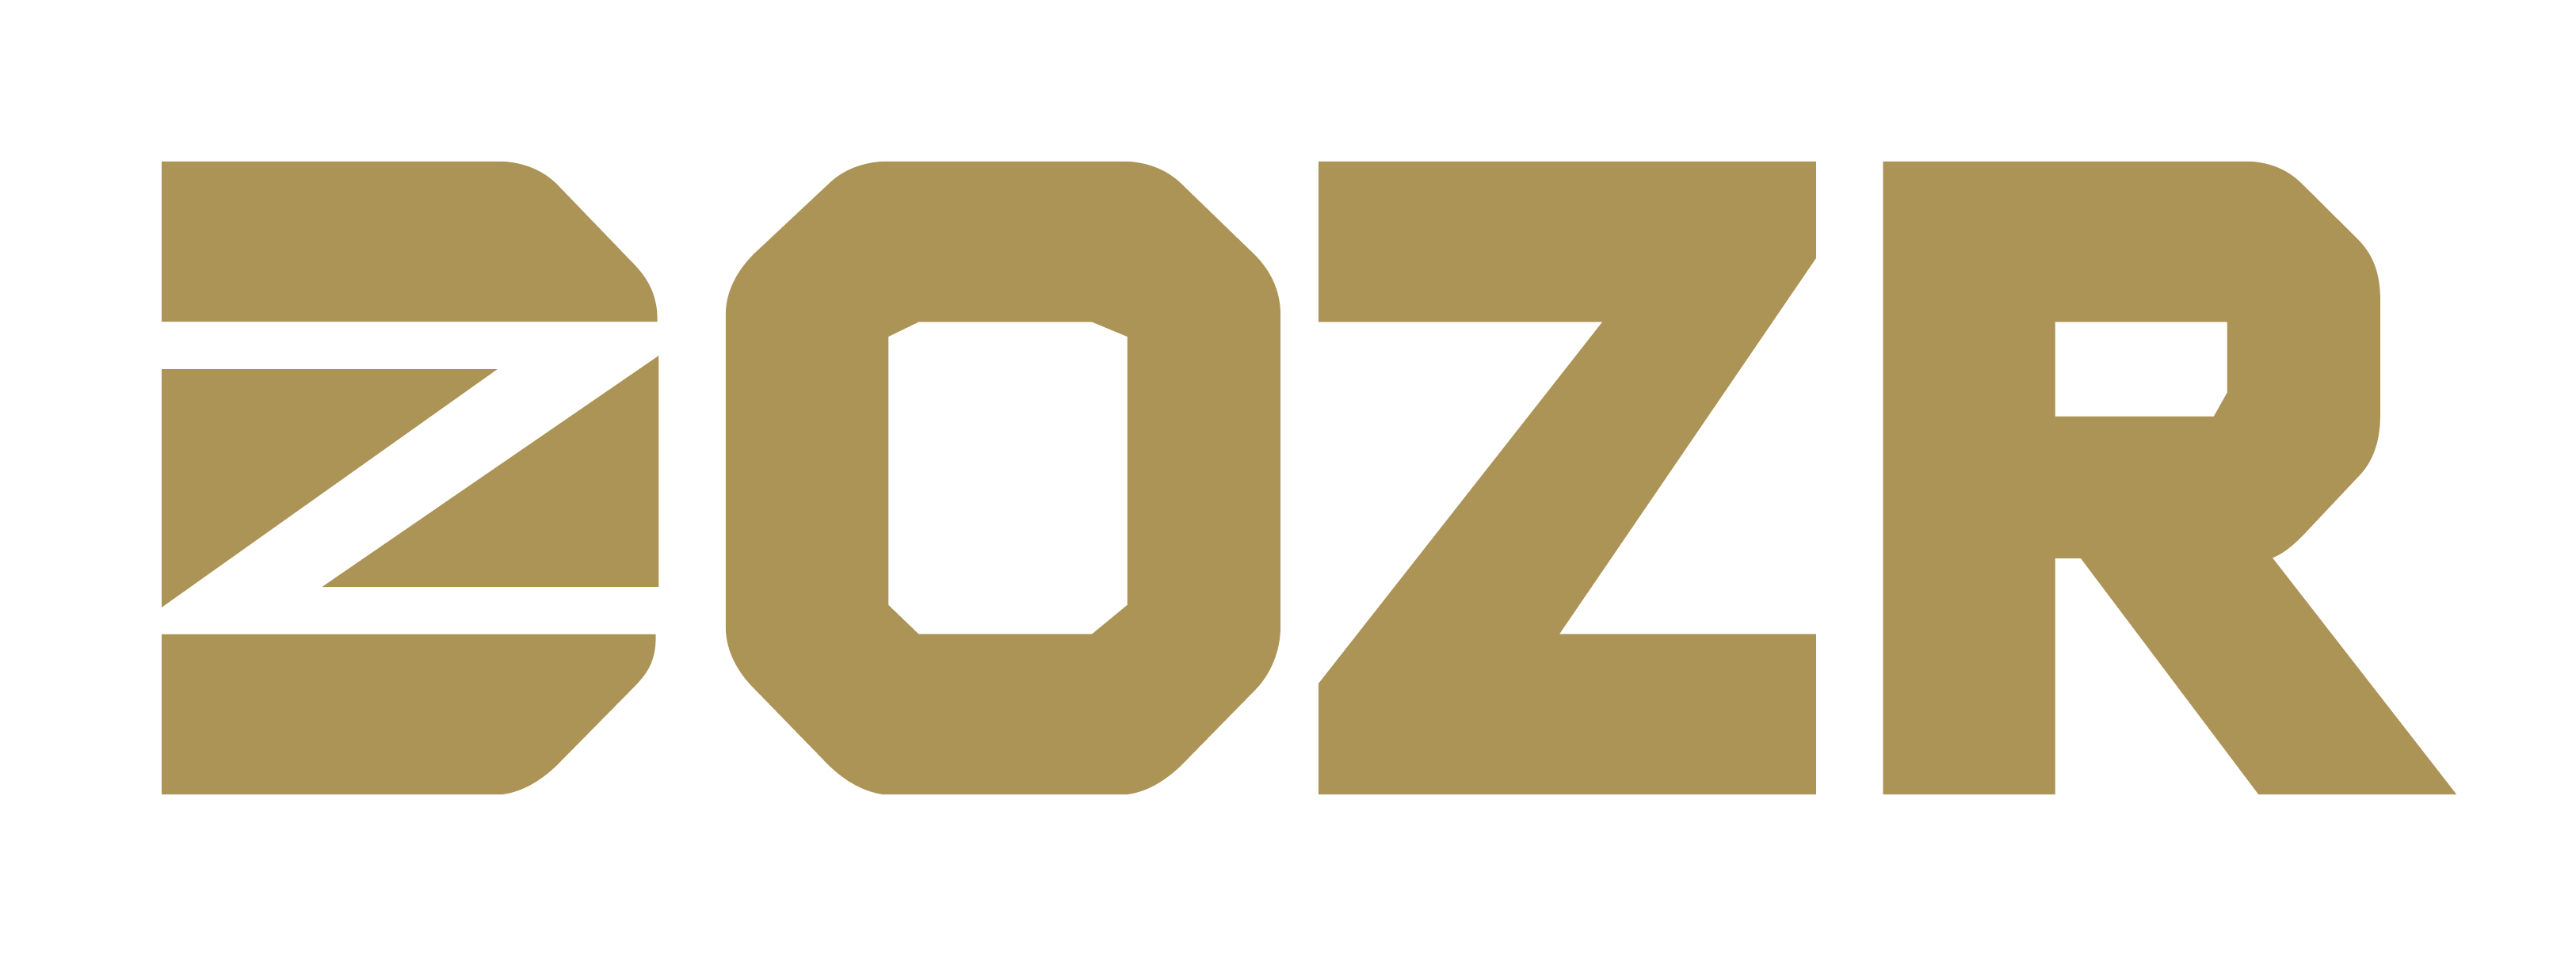 DOZR’s Certified as 